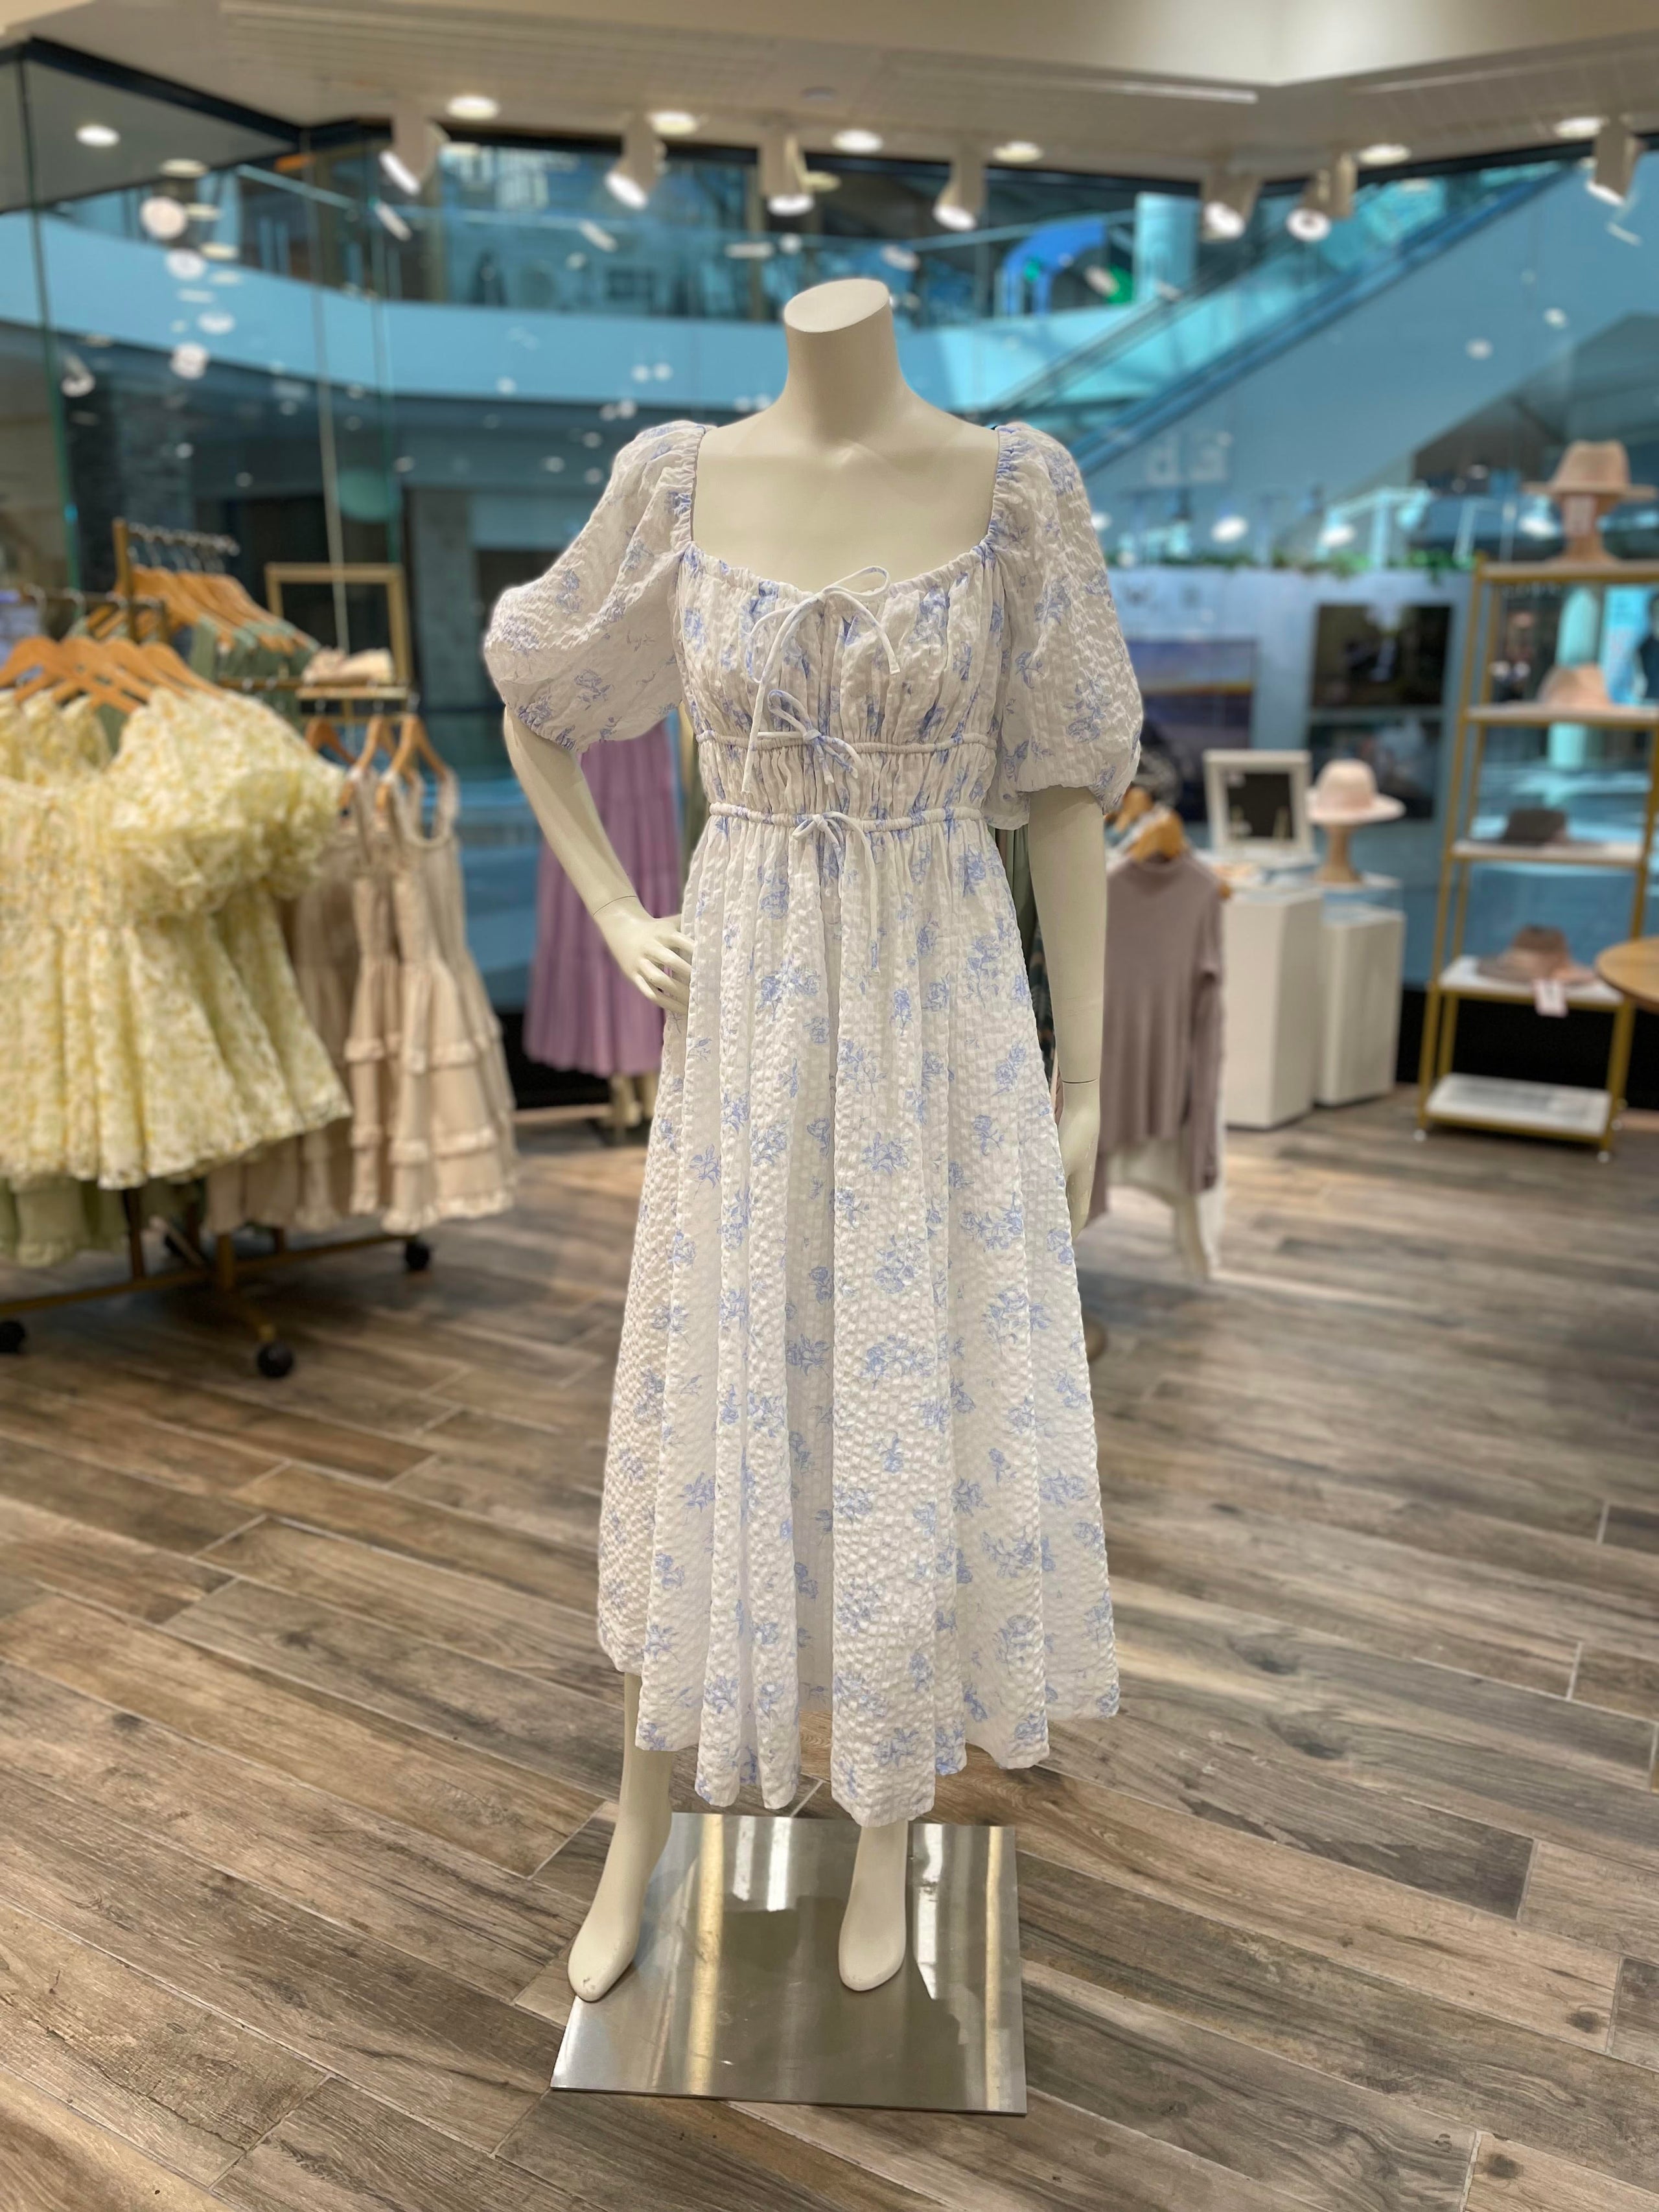 Floral Midi Dress